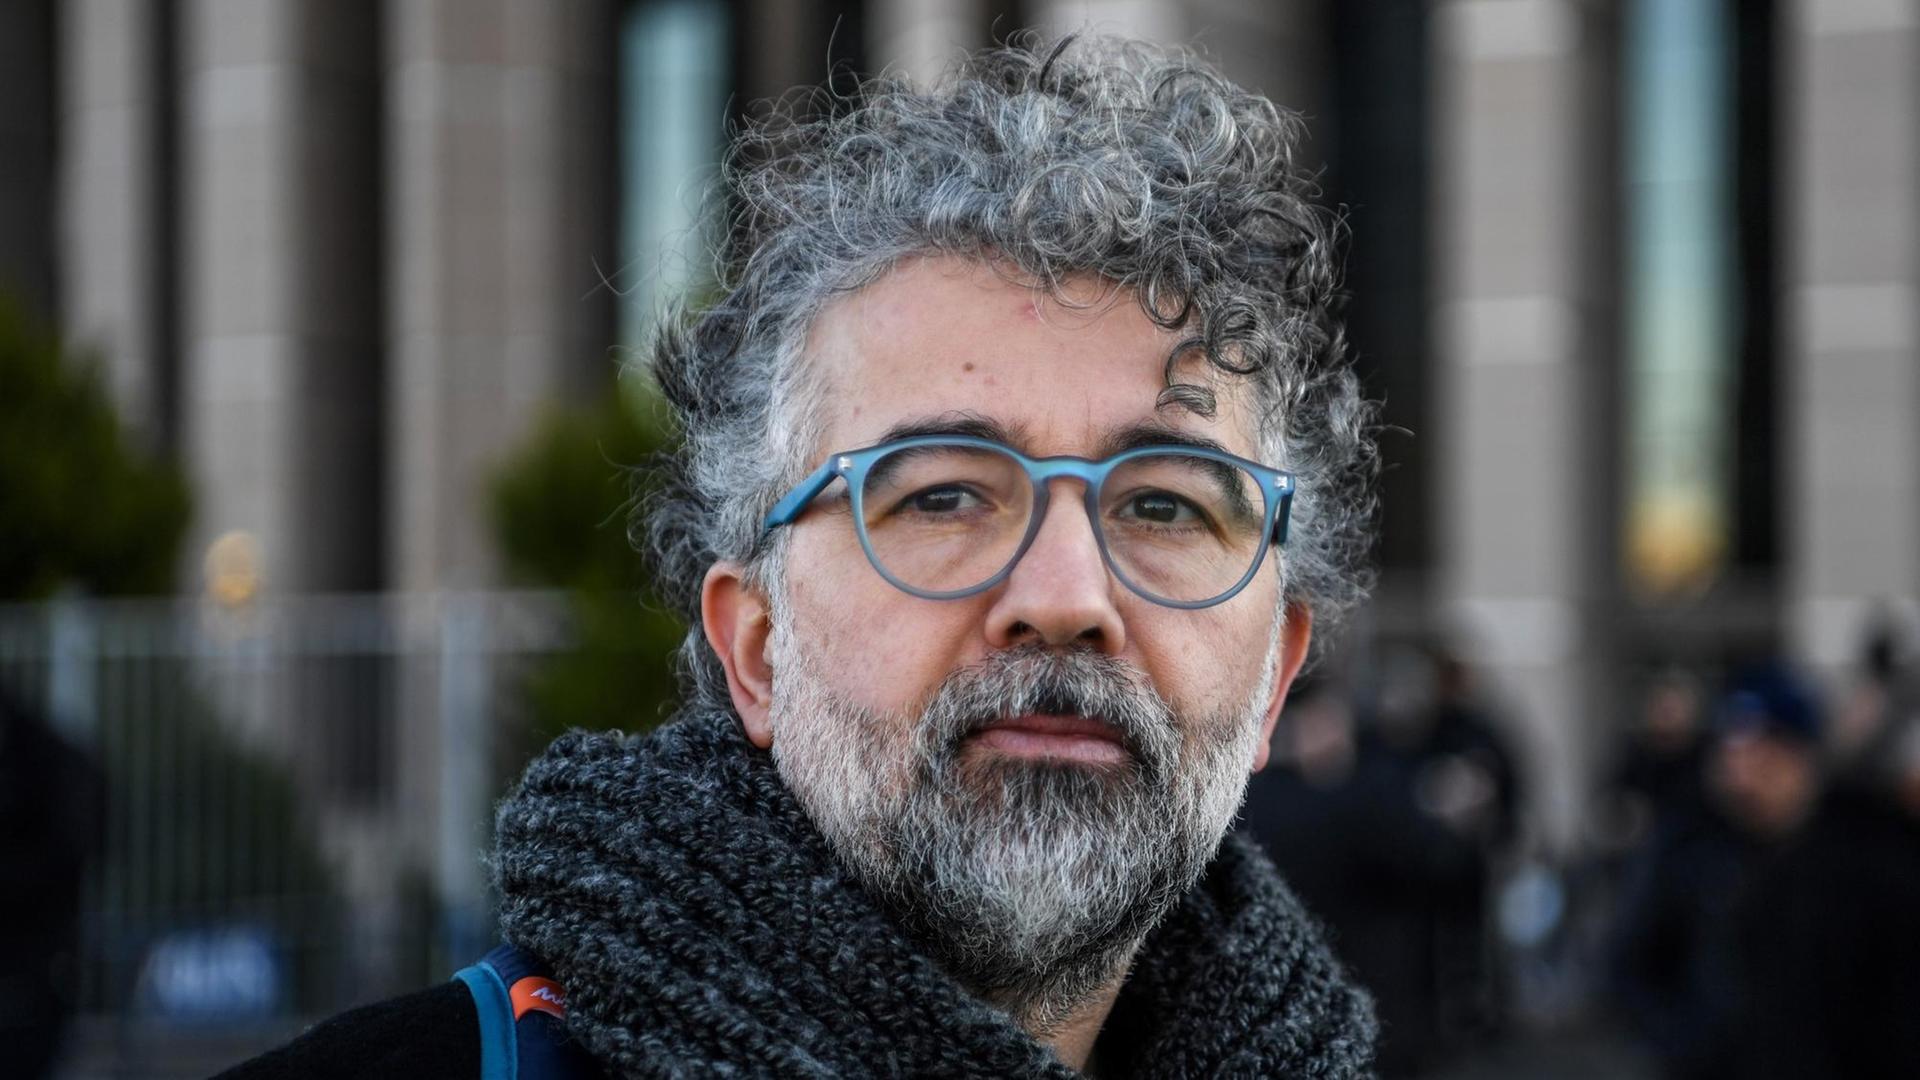 Erol Önderoglu von der Organisation "Reporter ohne Grenzen" vor dem Gerichtsgebäude in Istanbul, aufgenommen am 18. Januar 2019.